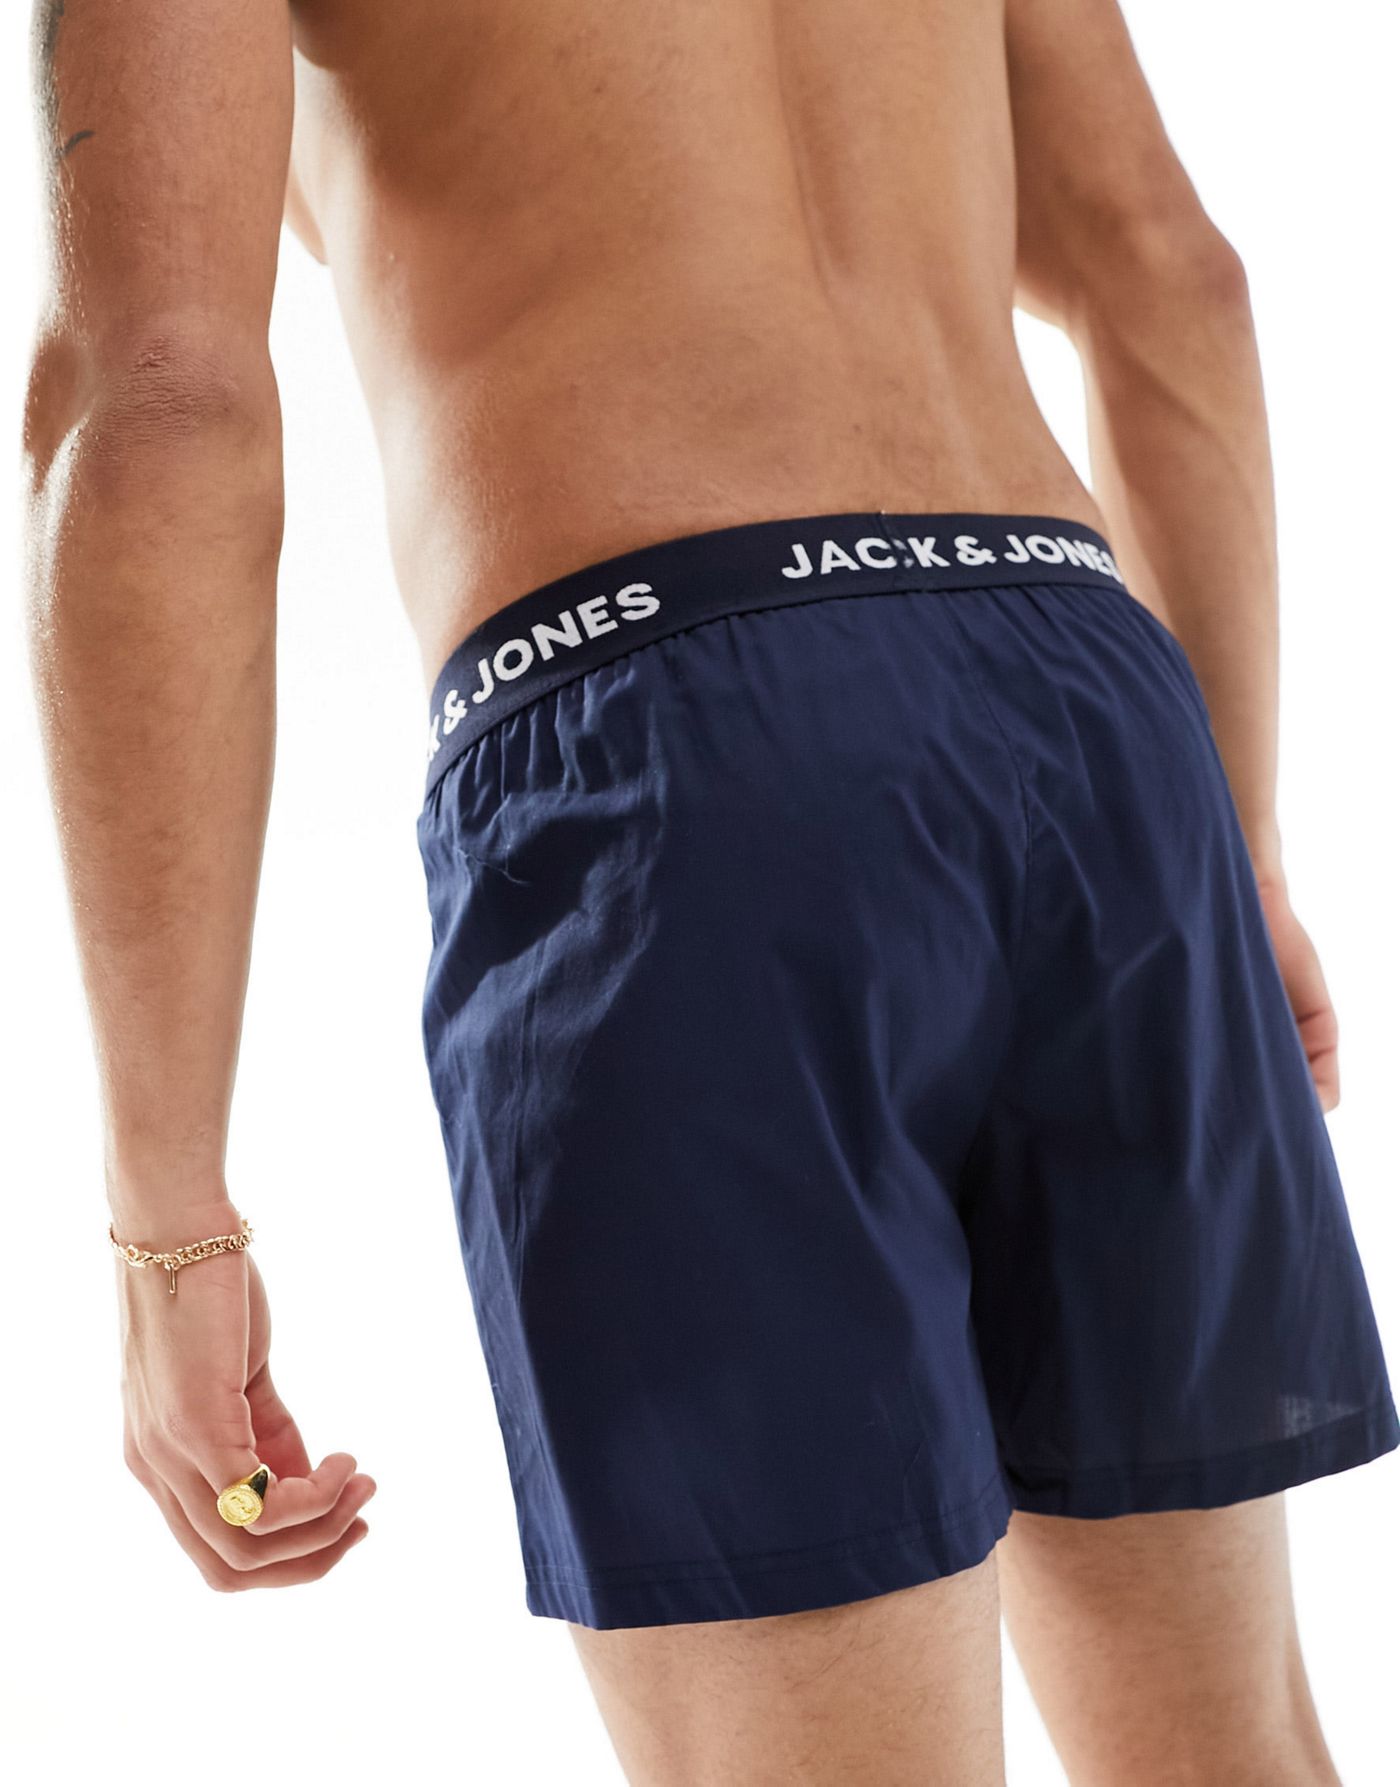 Jack & Jones 2 pack woven trunks in navy & check